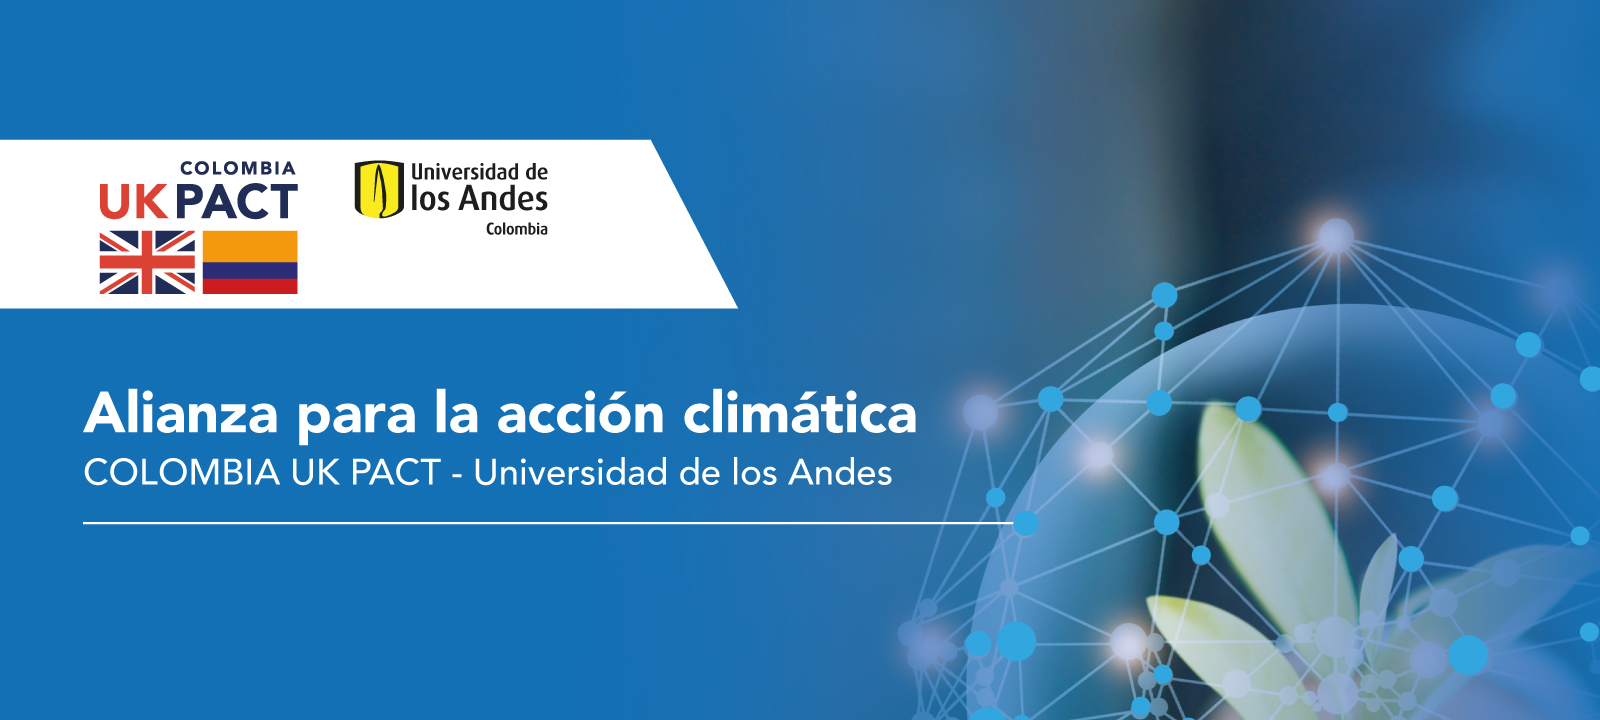 Universidad de los Andes y Colombia-UK PACT anuncian su alianza para la acción climática